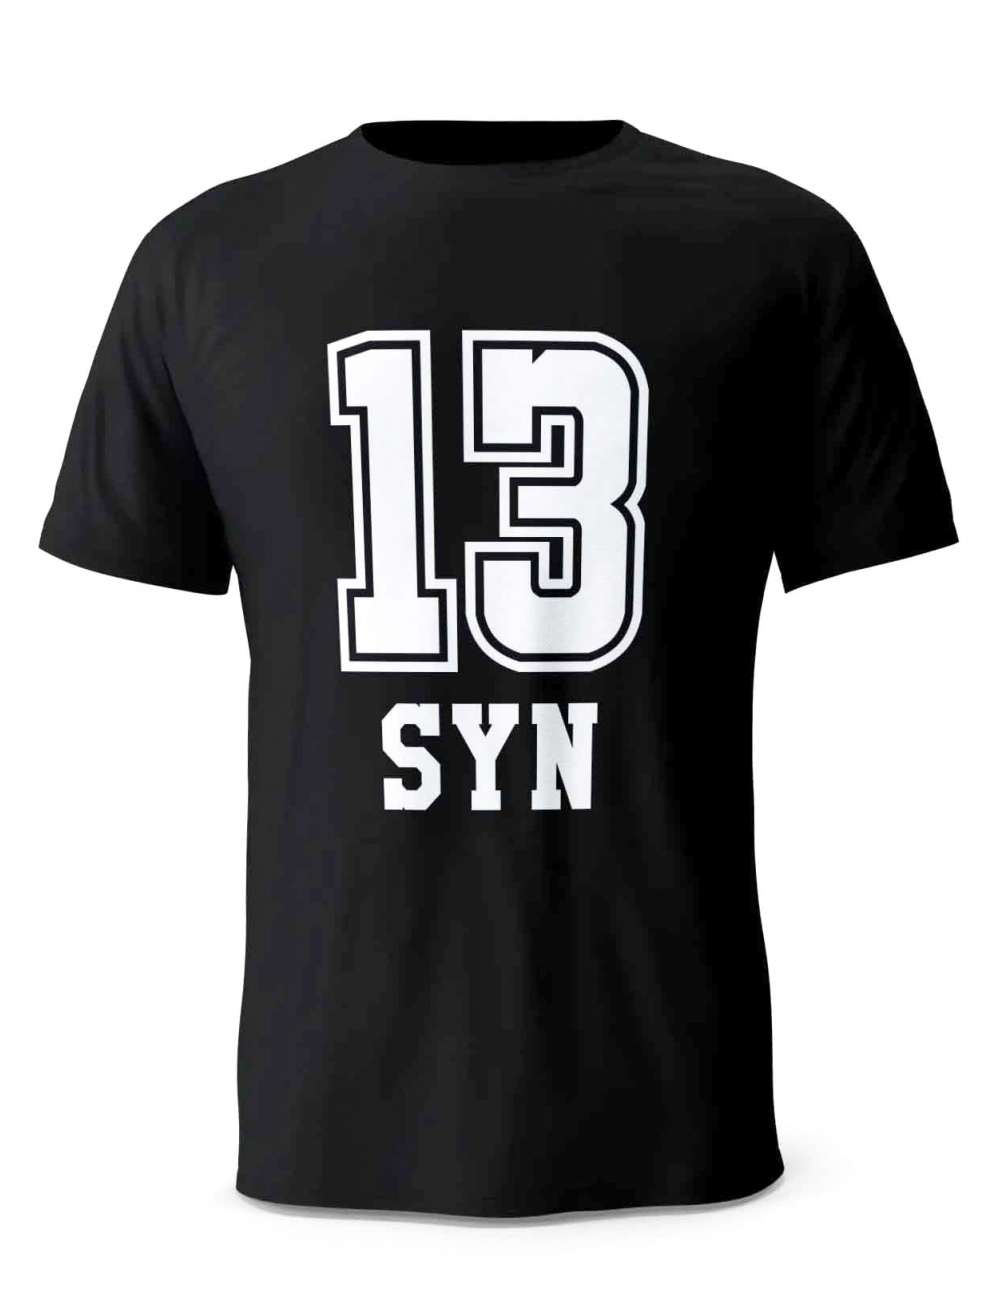 Koszulka Męska 13 Syn, T-shirt dla Mężczyzny